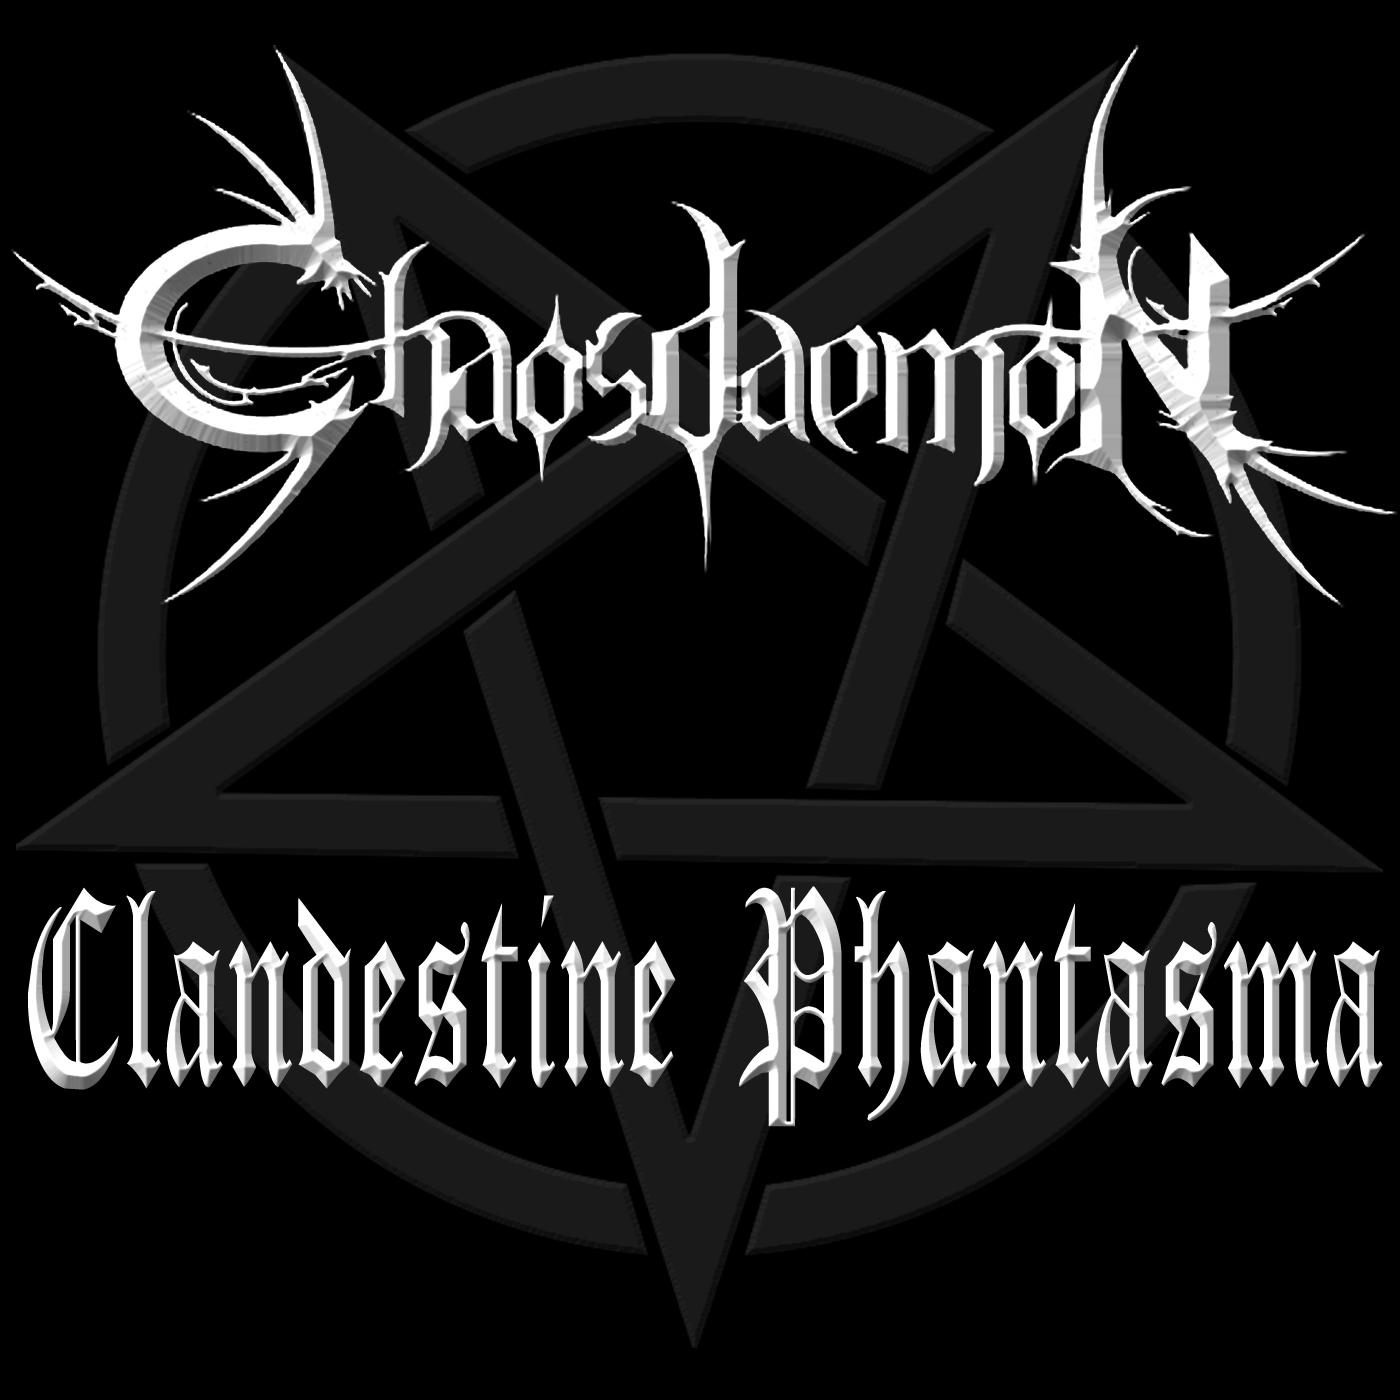 Clandestine phantasma